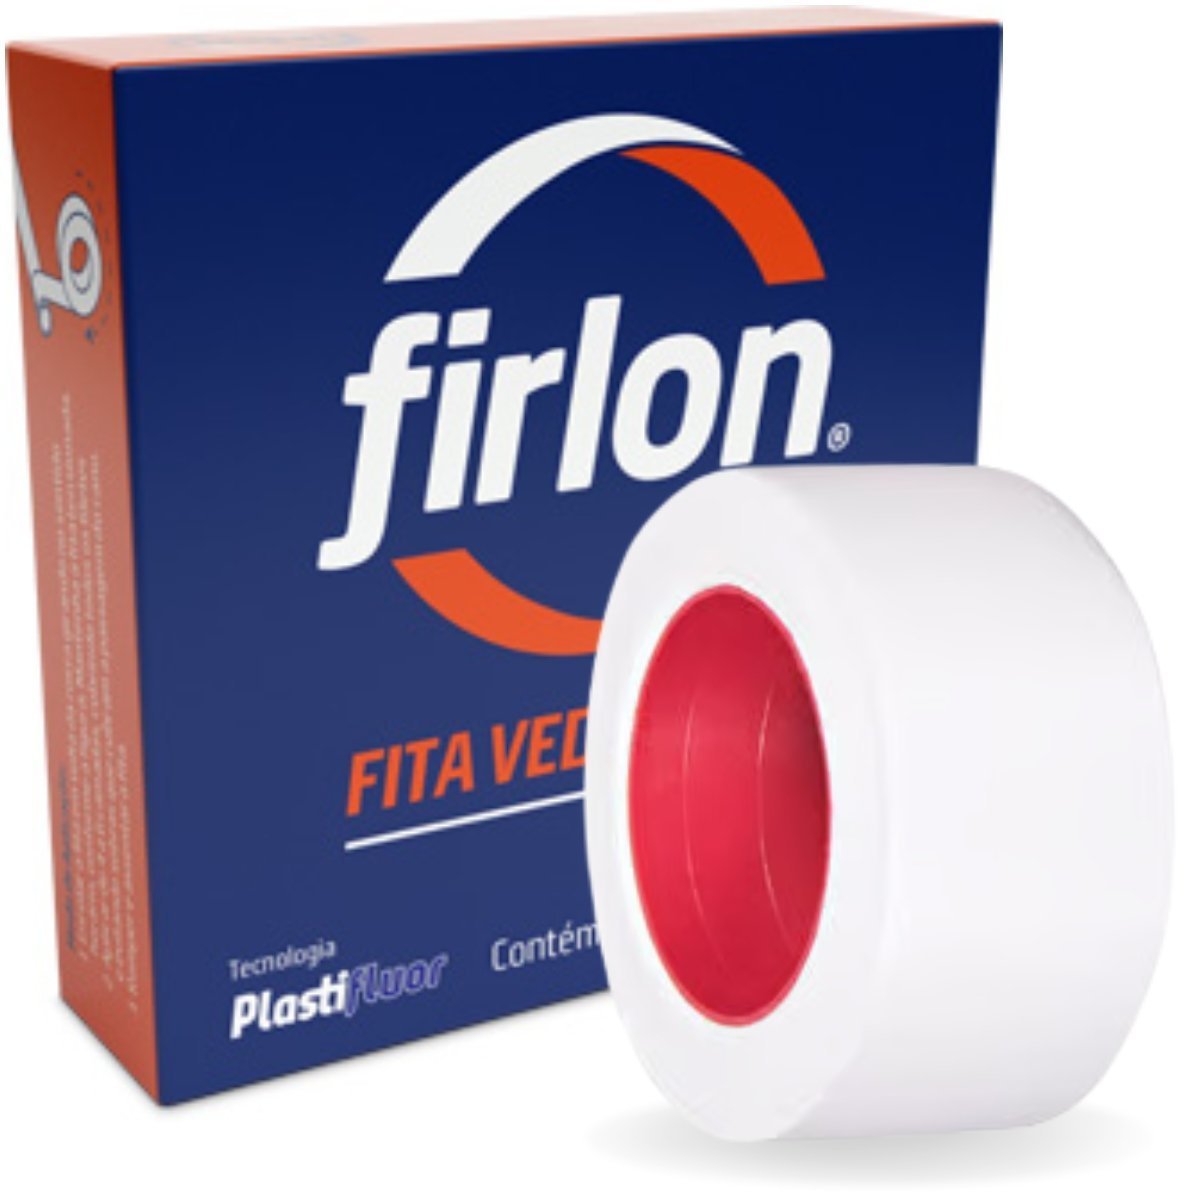 Fita Veda Rosca Teflon 12mm x 5m | Firlon - 1